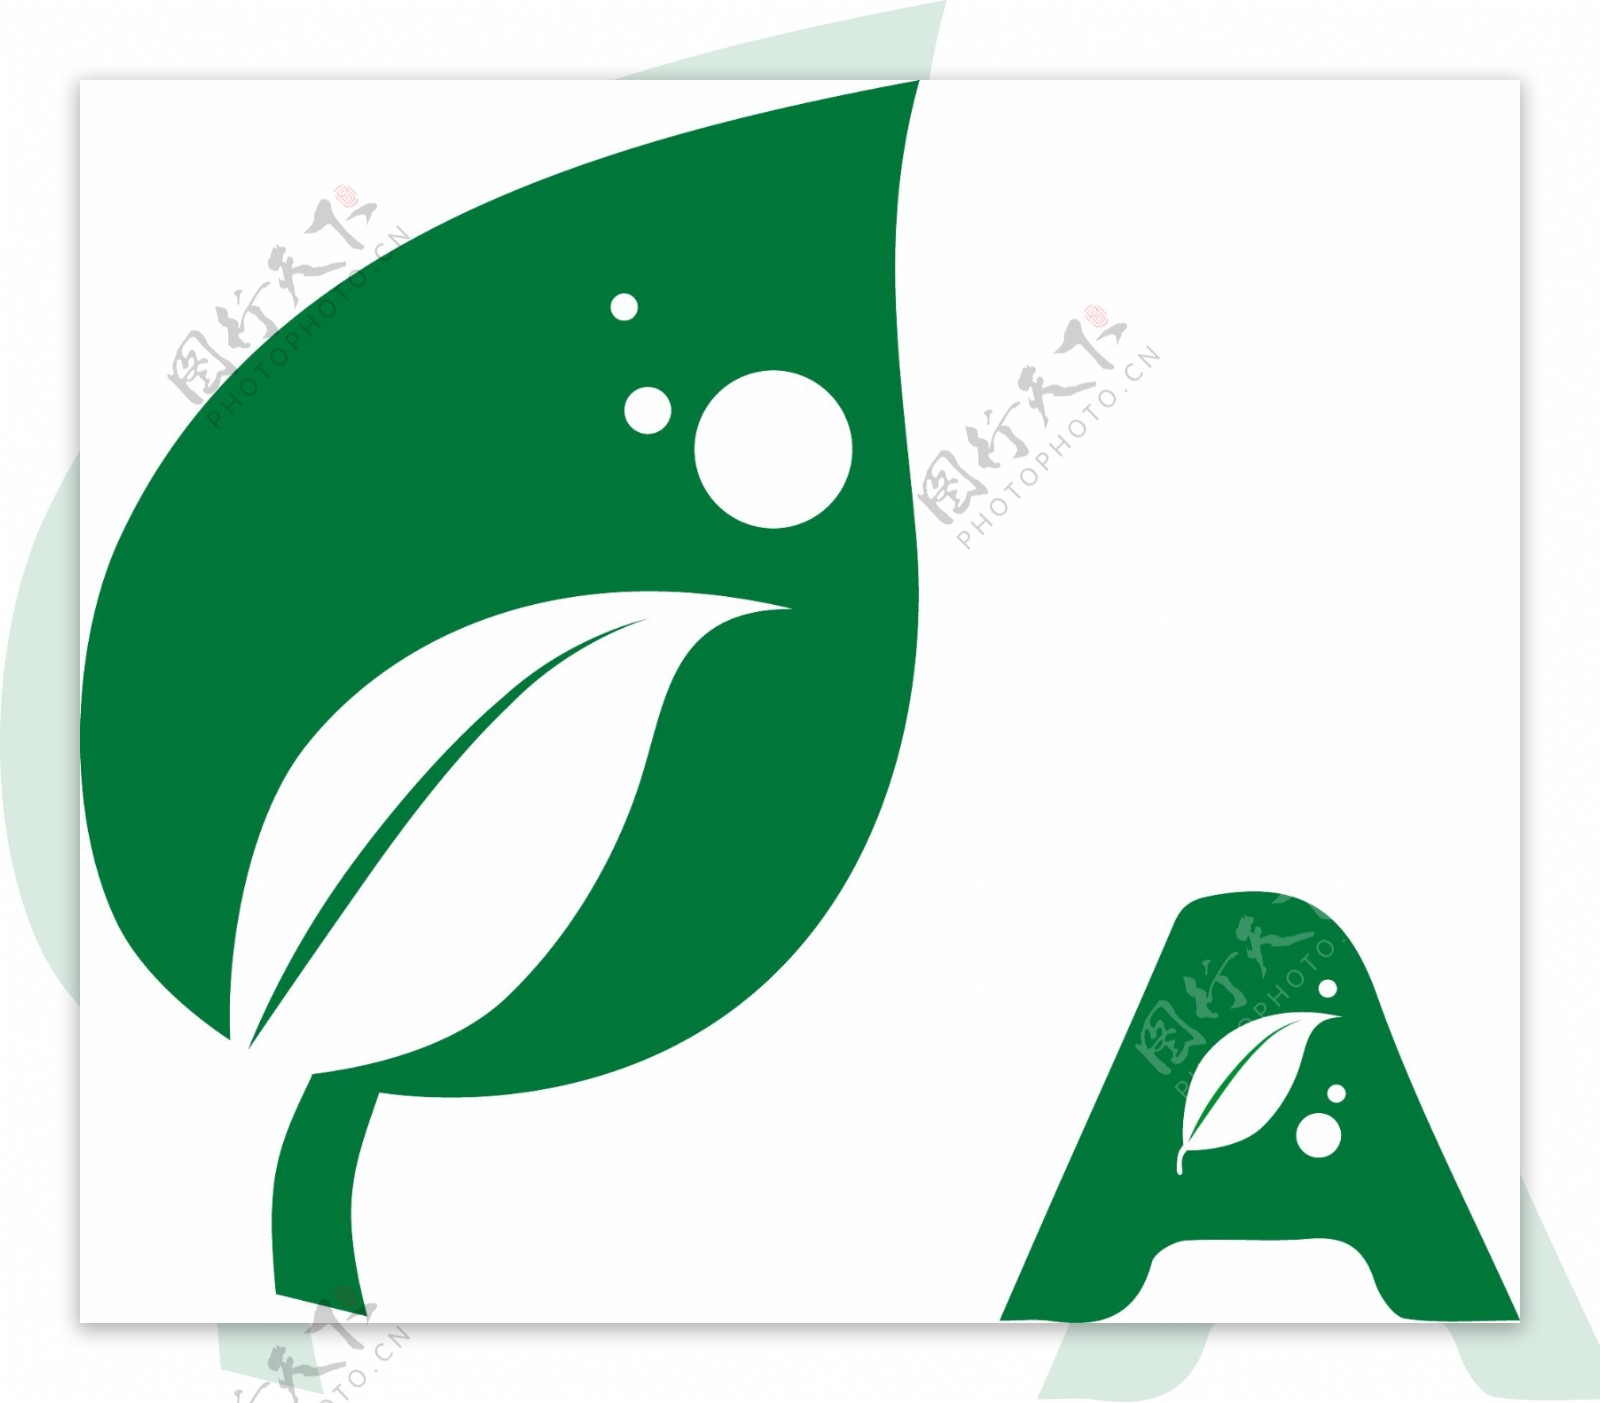 绿色叶子logo矢量素材